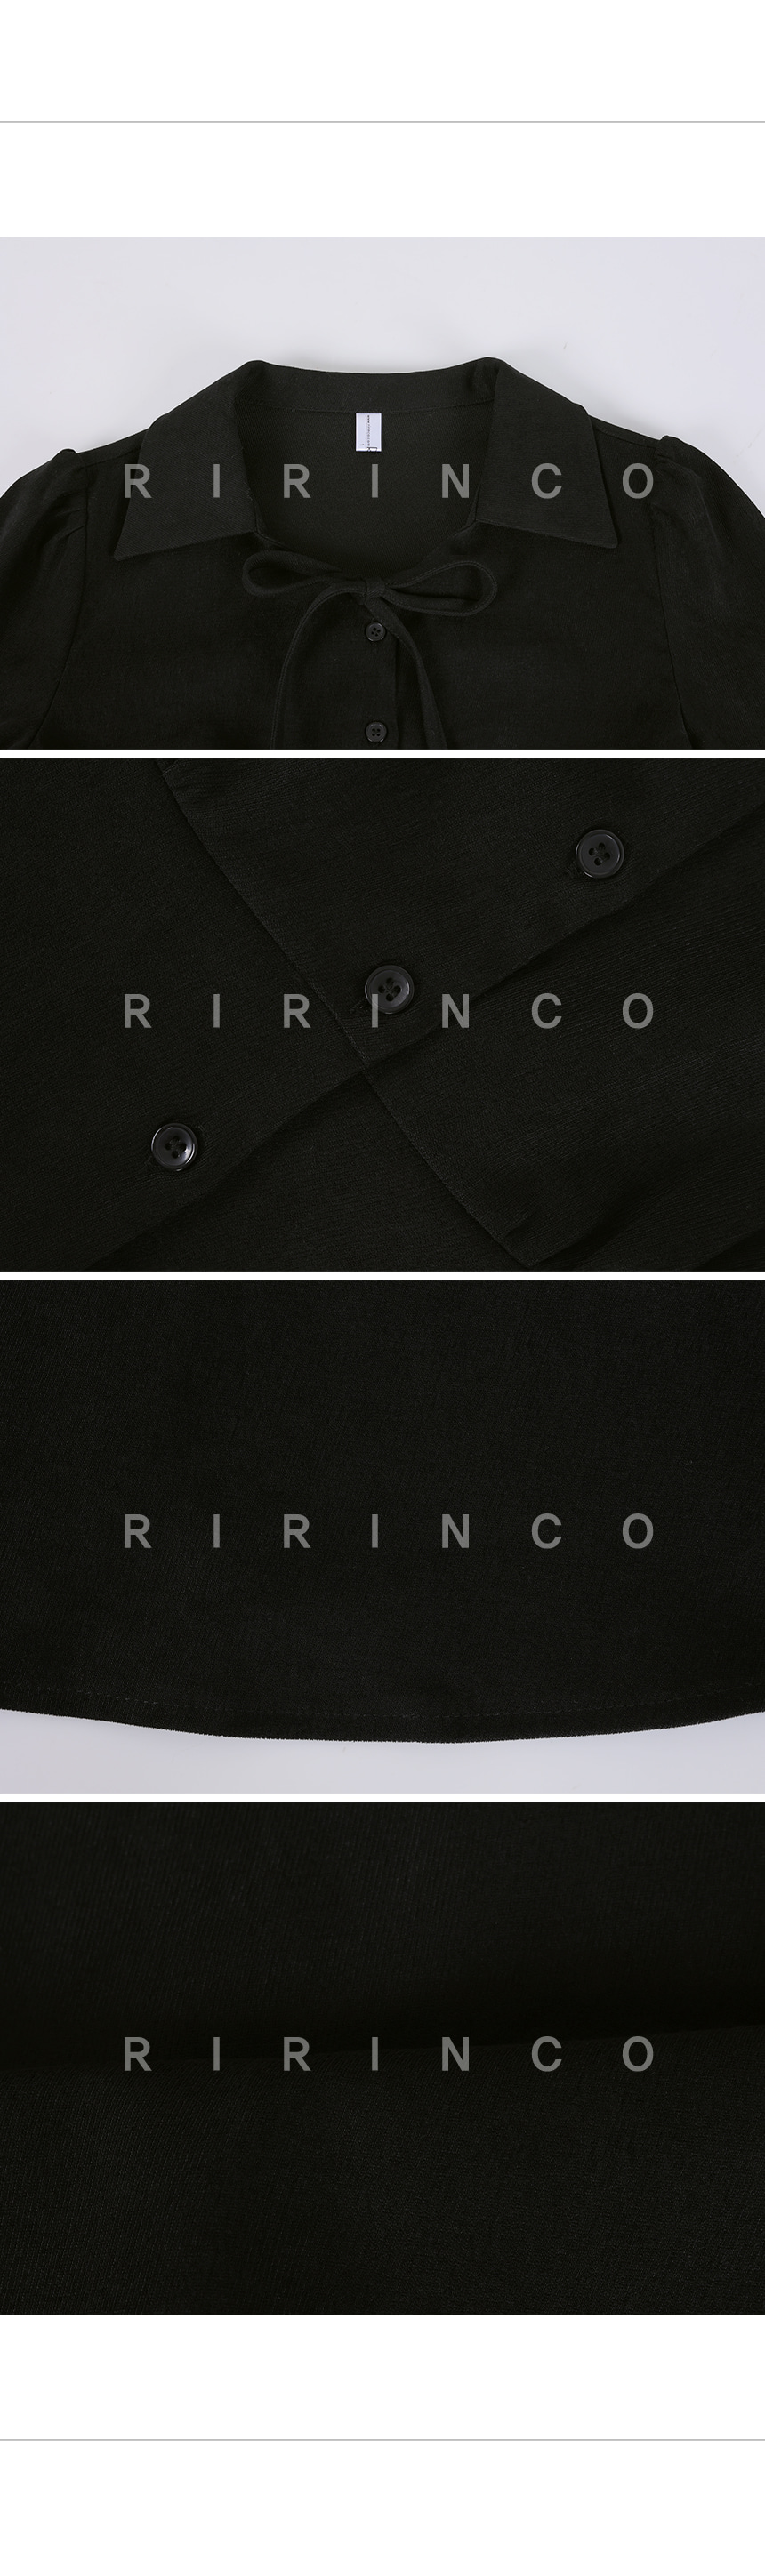 RIRINCO ピーチ起毛オープンカラーシャーリングブラウス